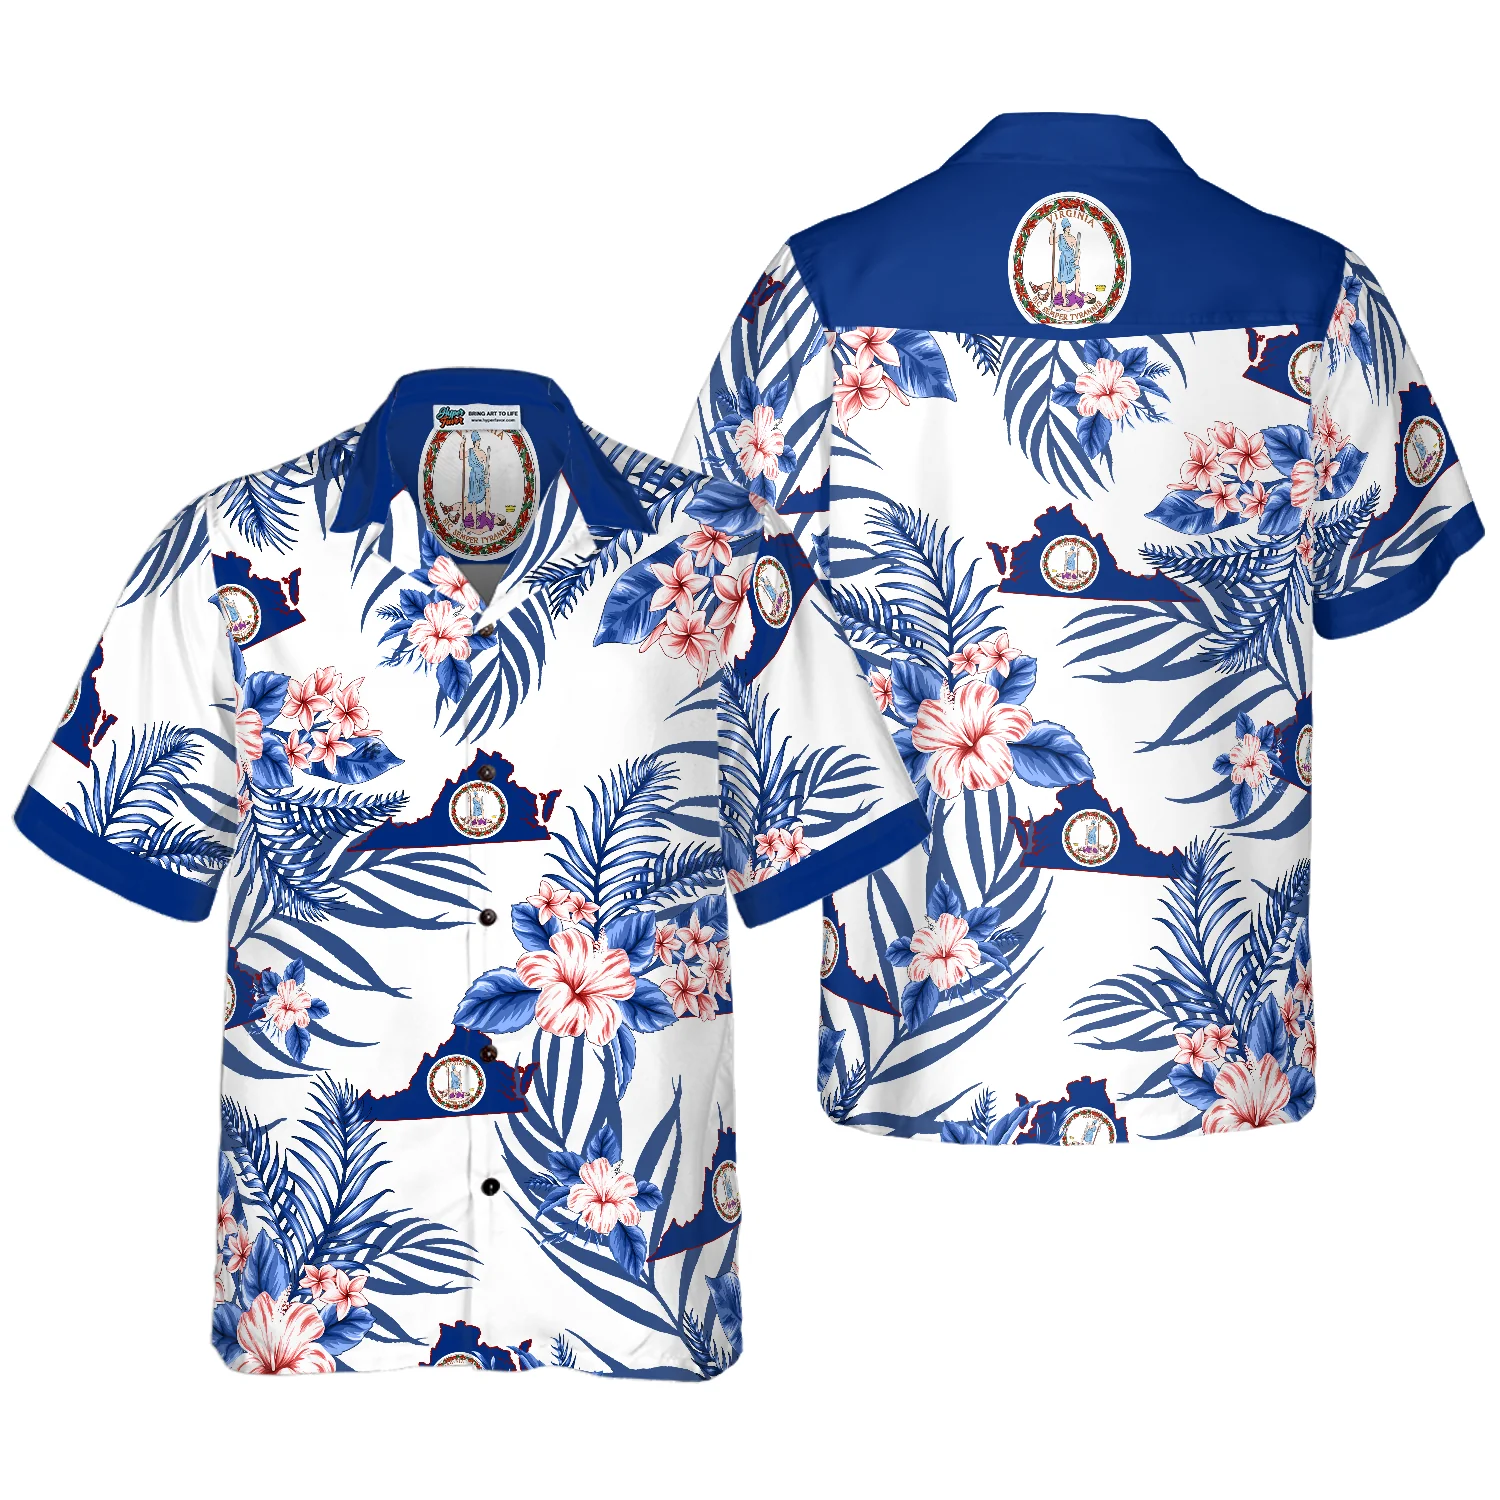 Virginia Proud Hawaiian Shirt Aloha Shirt For Men and Women